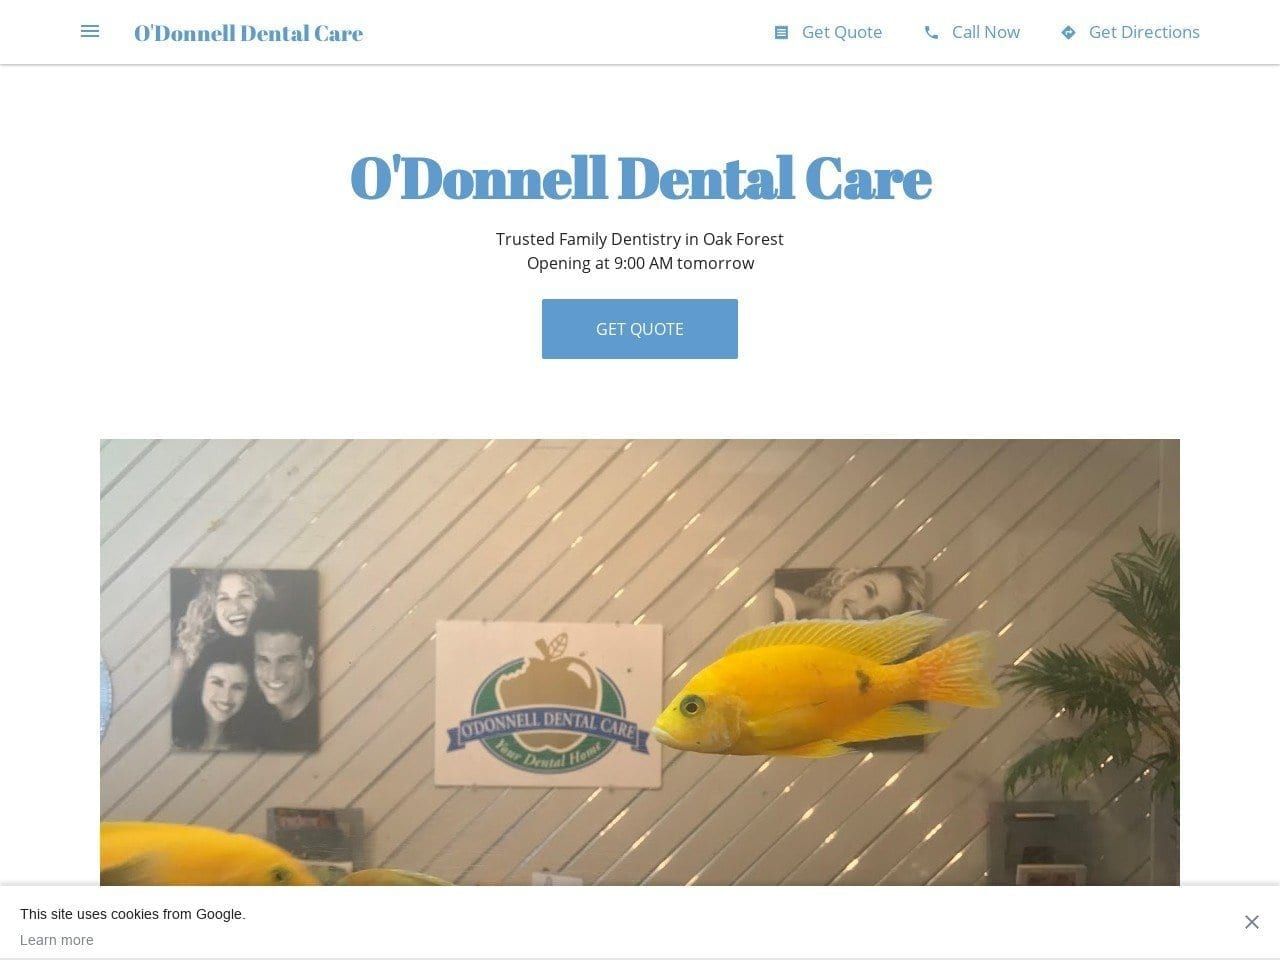 ODonnell Dental Care Website Screenshot from oakforestdentist.com